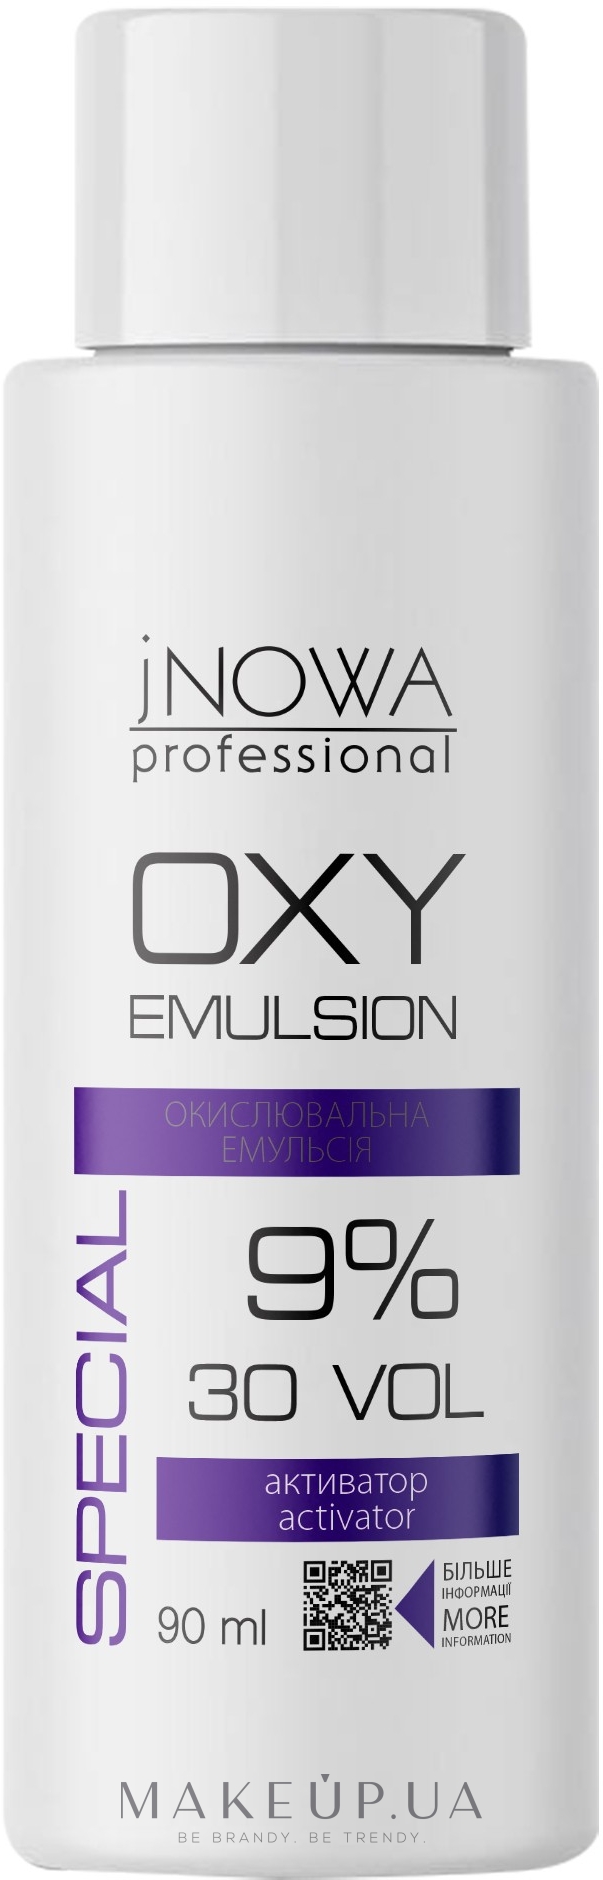 Окислювальна емульсія, 9 % - jNOWA Professional OXY 9% (30 vol) — фото 90ml